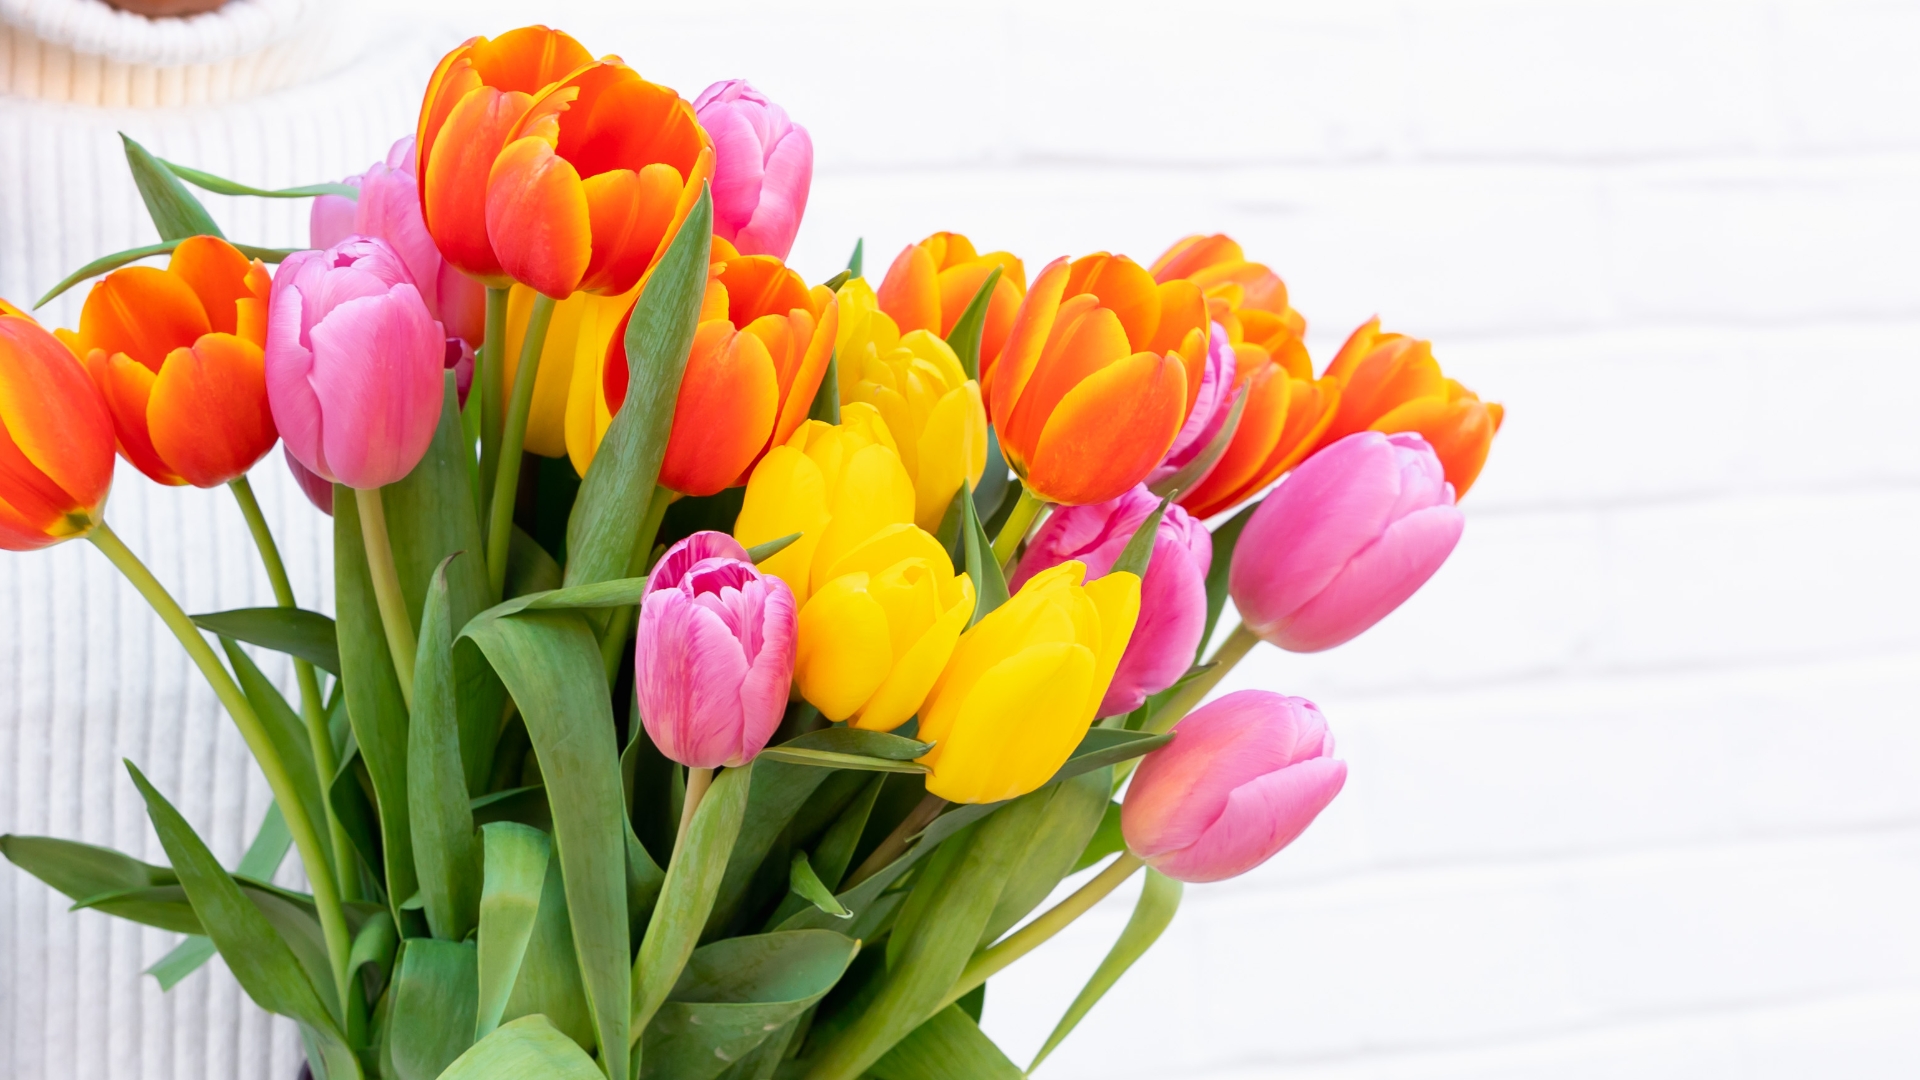 ### Multicolored Tulips ###